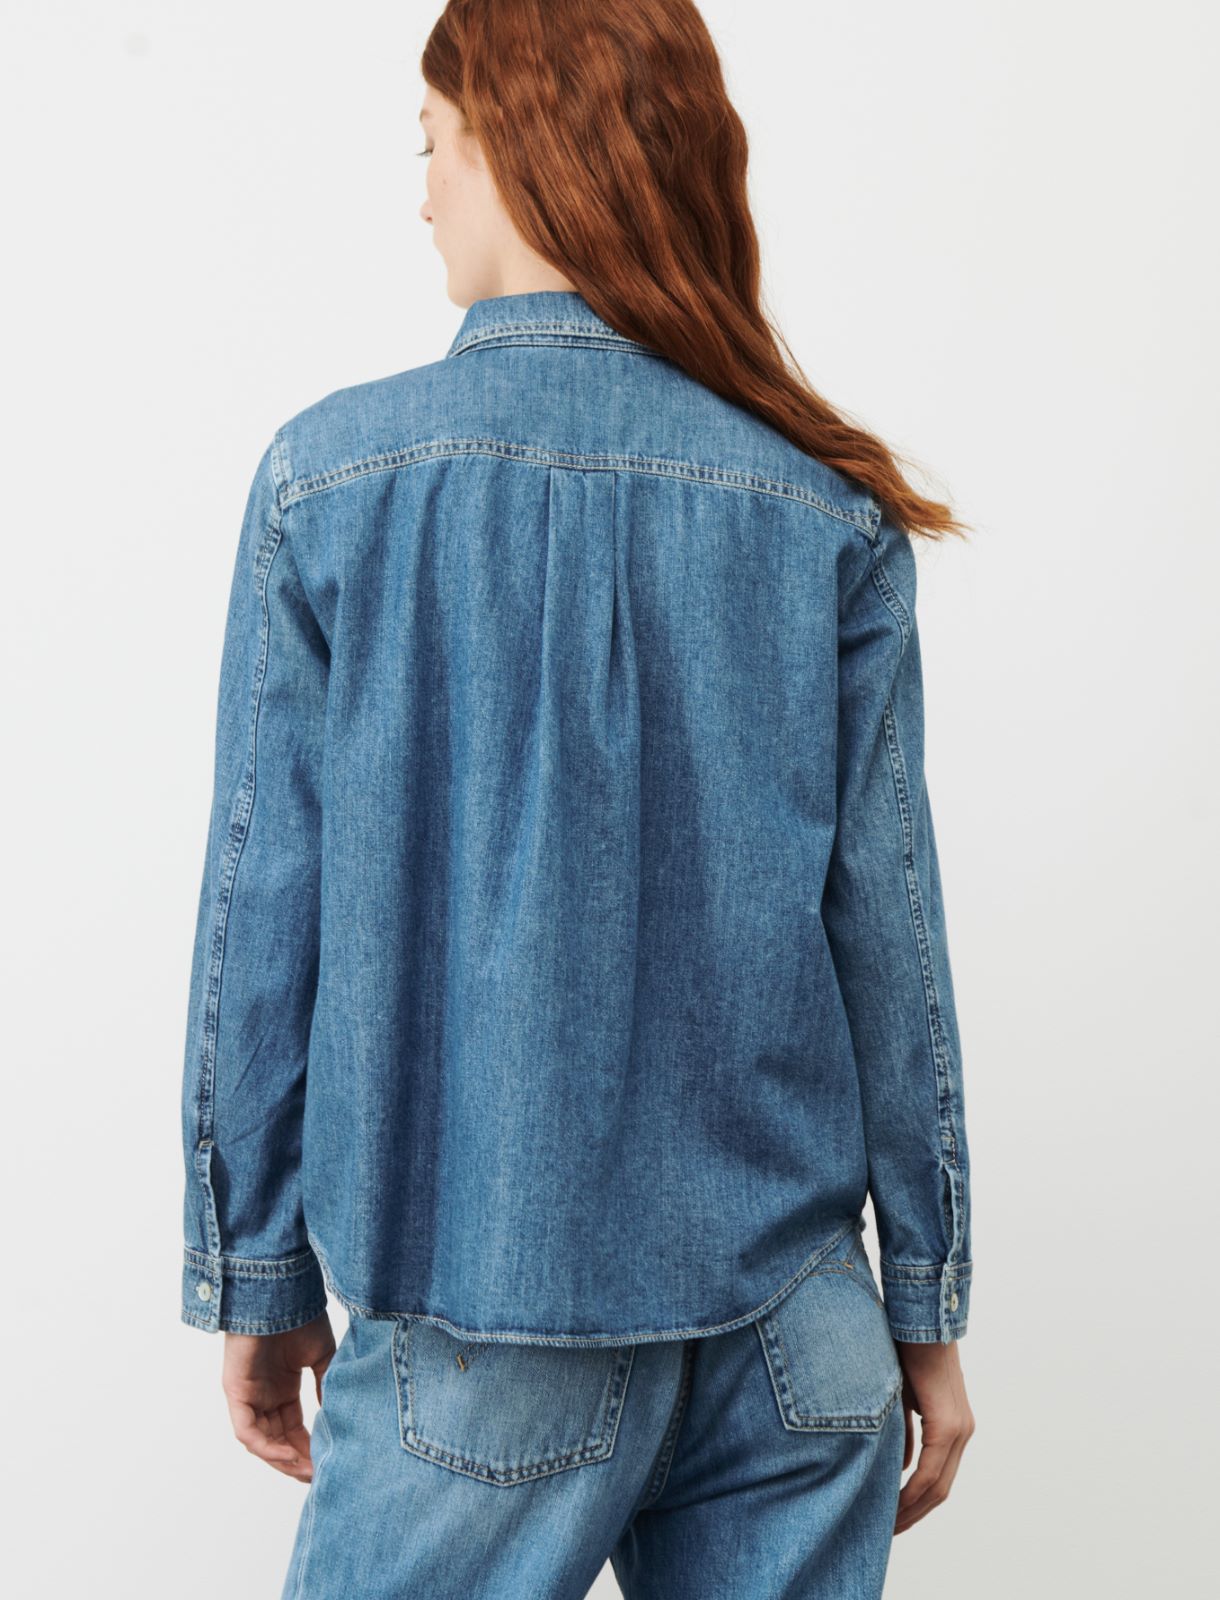 Denim shirt - Blue jeans - Marina Rinaldi - 2